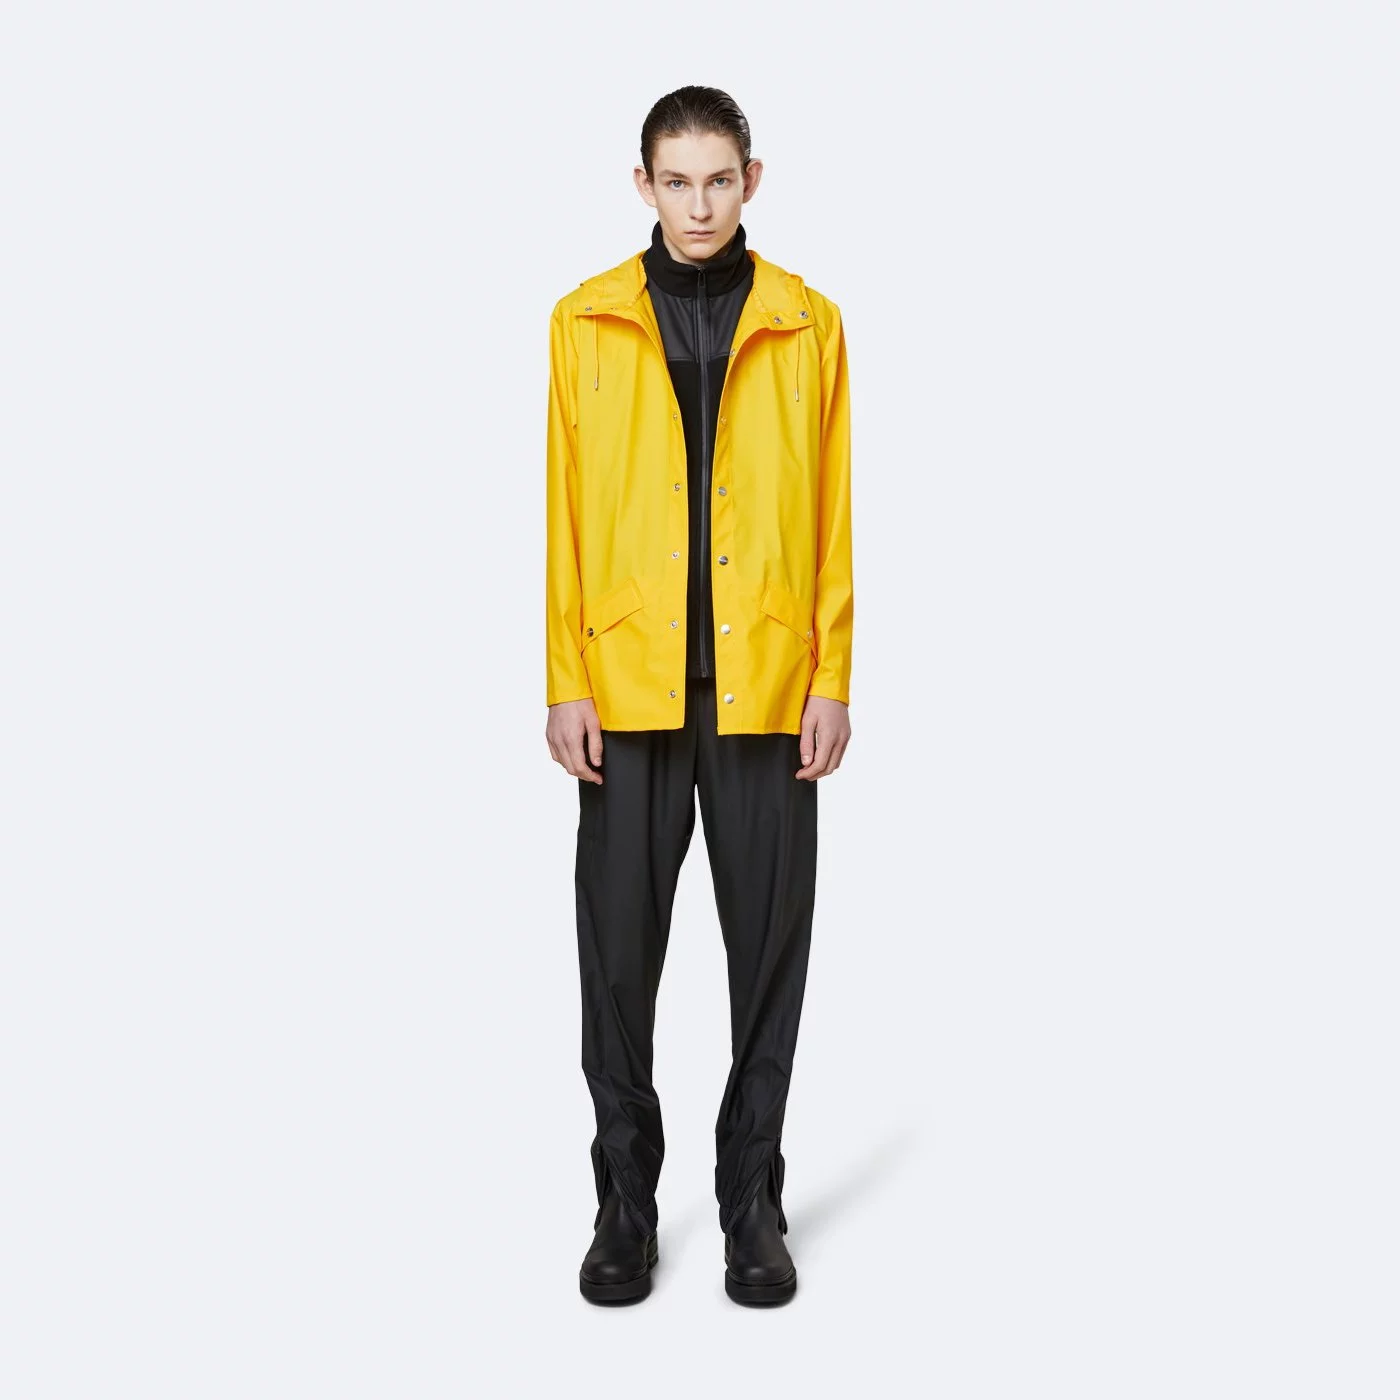 Pršiplášť Rains Jacket Yellow 1201-1 (L-XL) (Yellow)